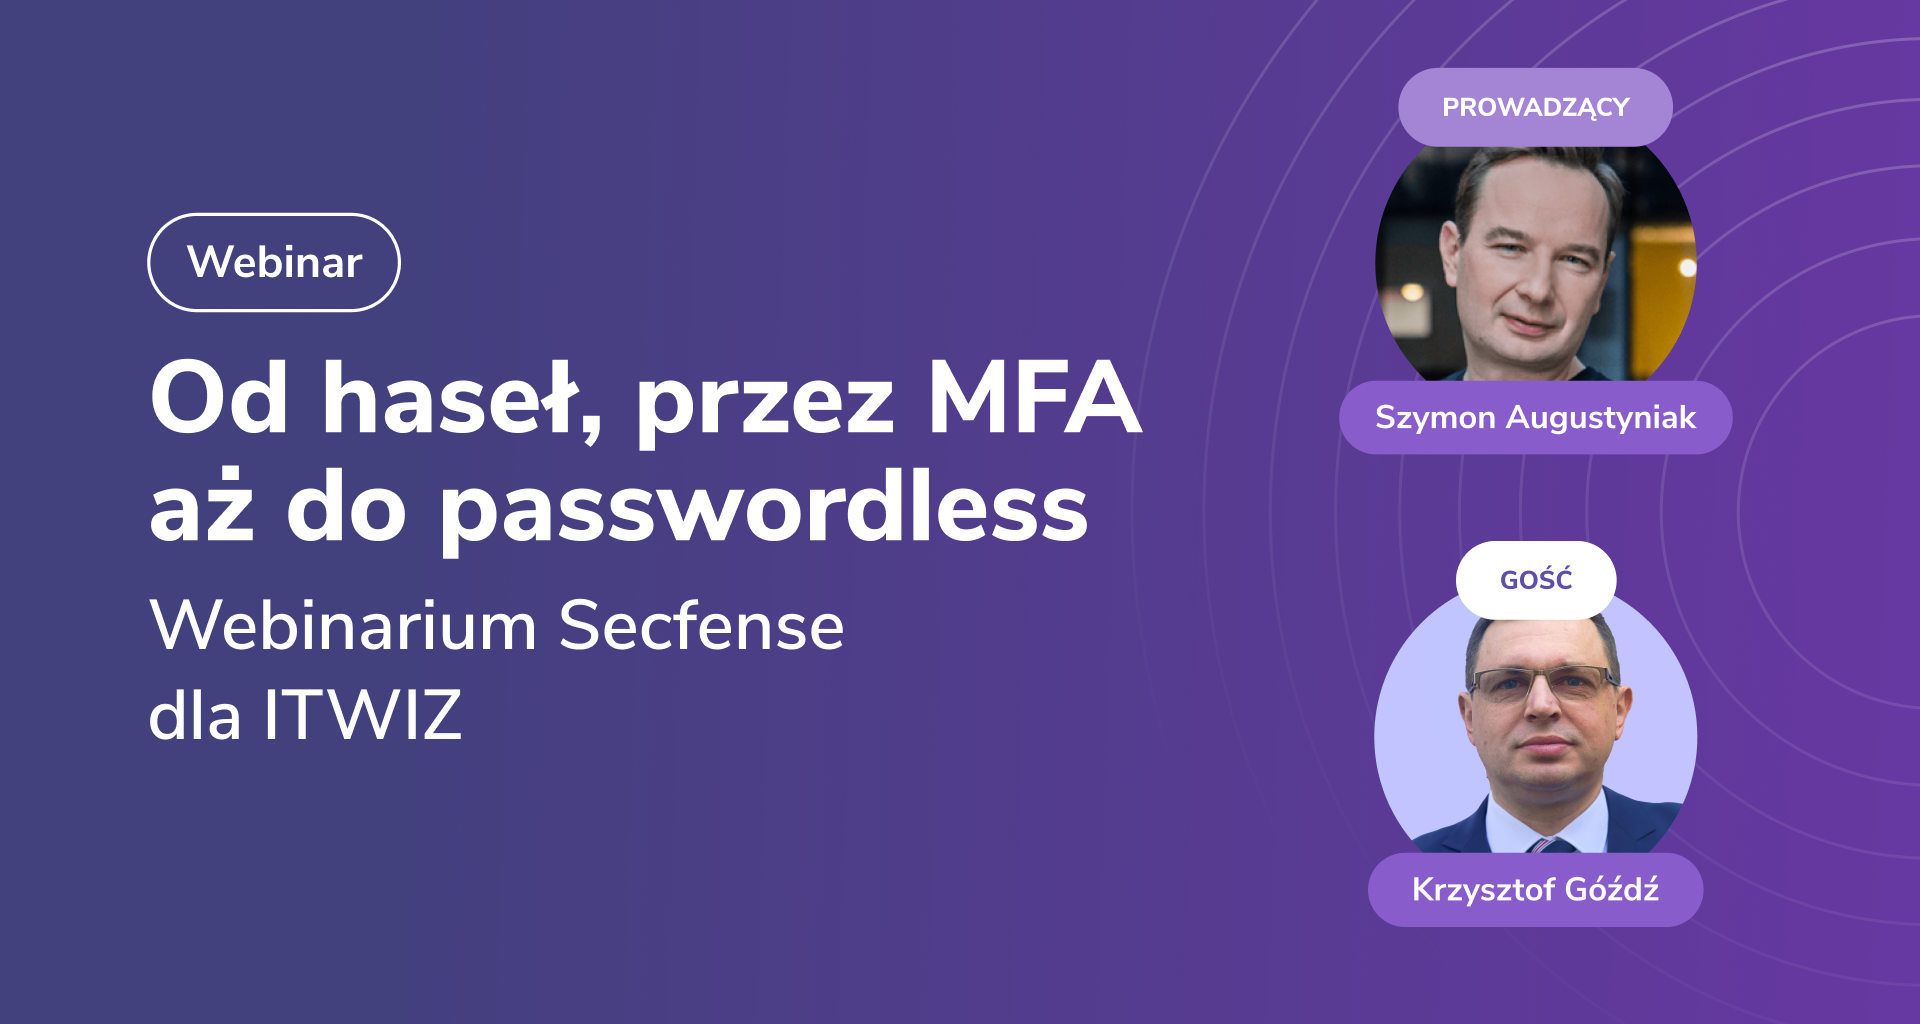 Jak wdrożyć passwordless | webinar Secfense dla ITWIZ